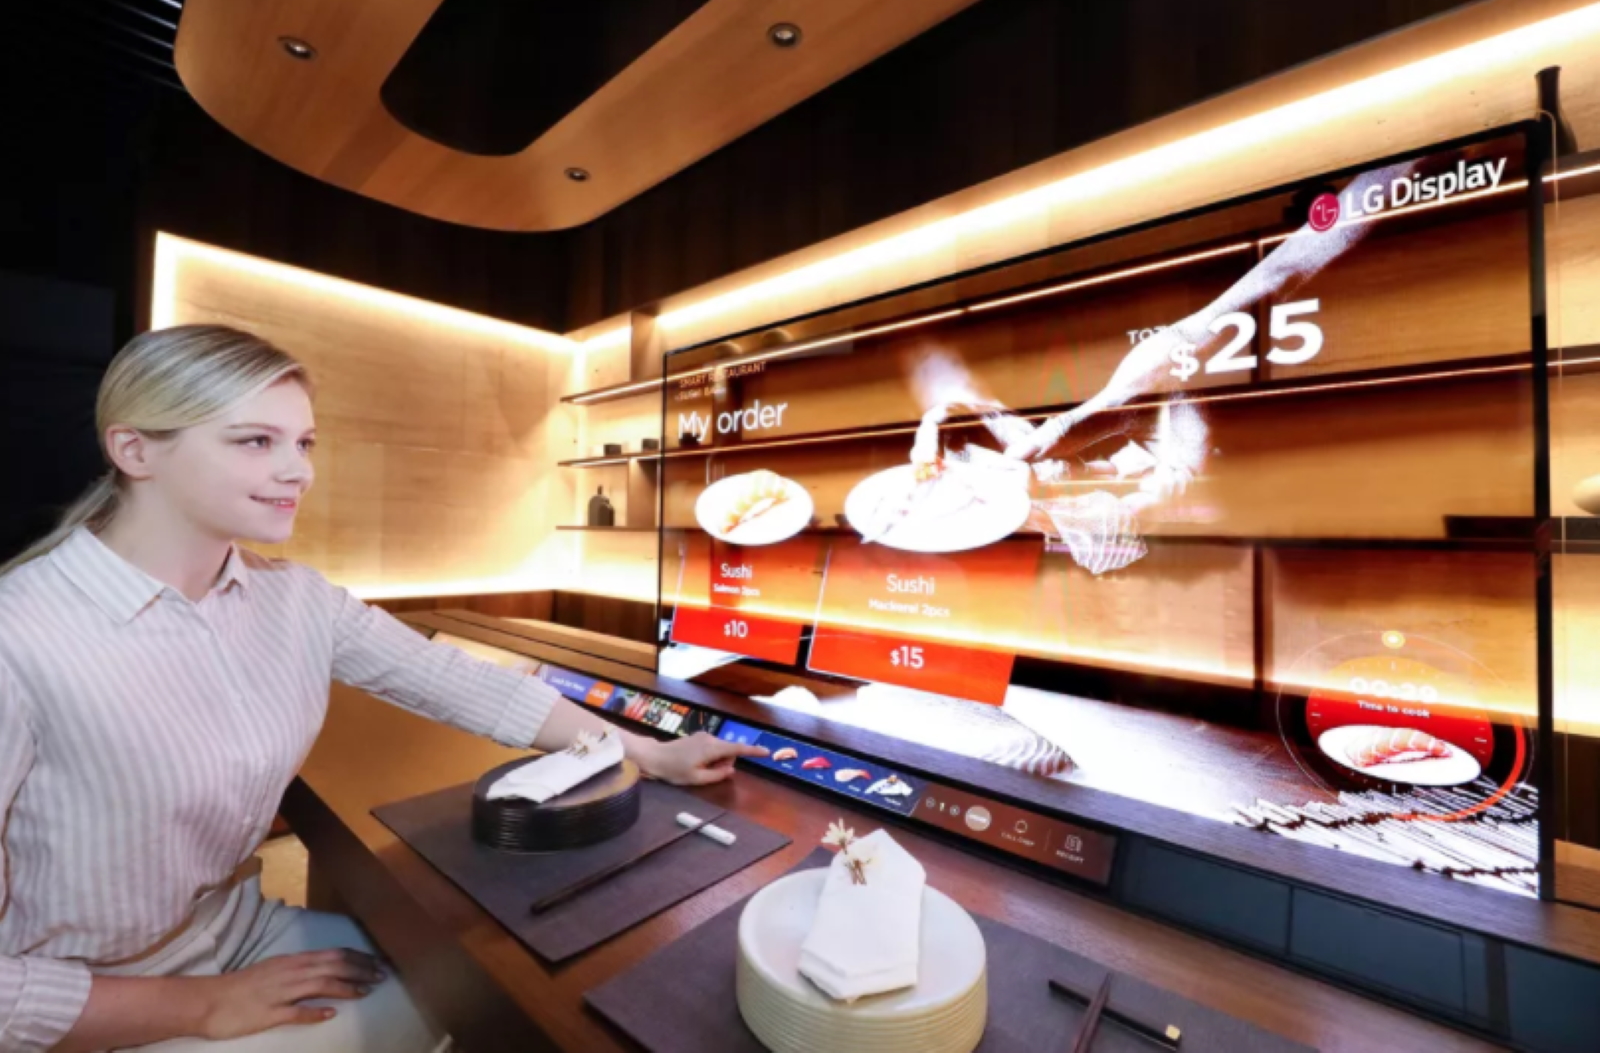 Un bar à sushis dans lequel l’écran permet d’afficher des menus sans pour autant masquer les préparations du chef. © LG